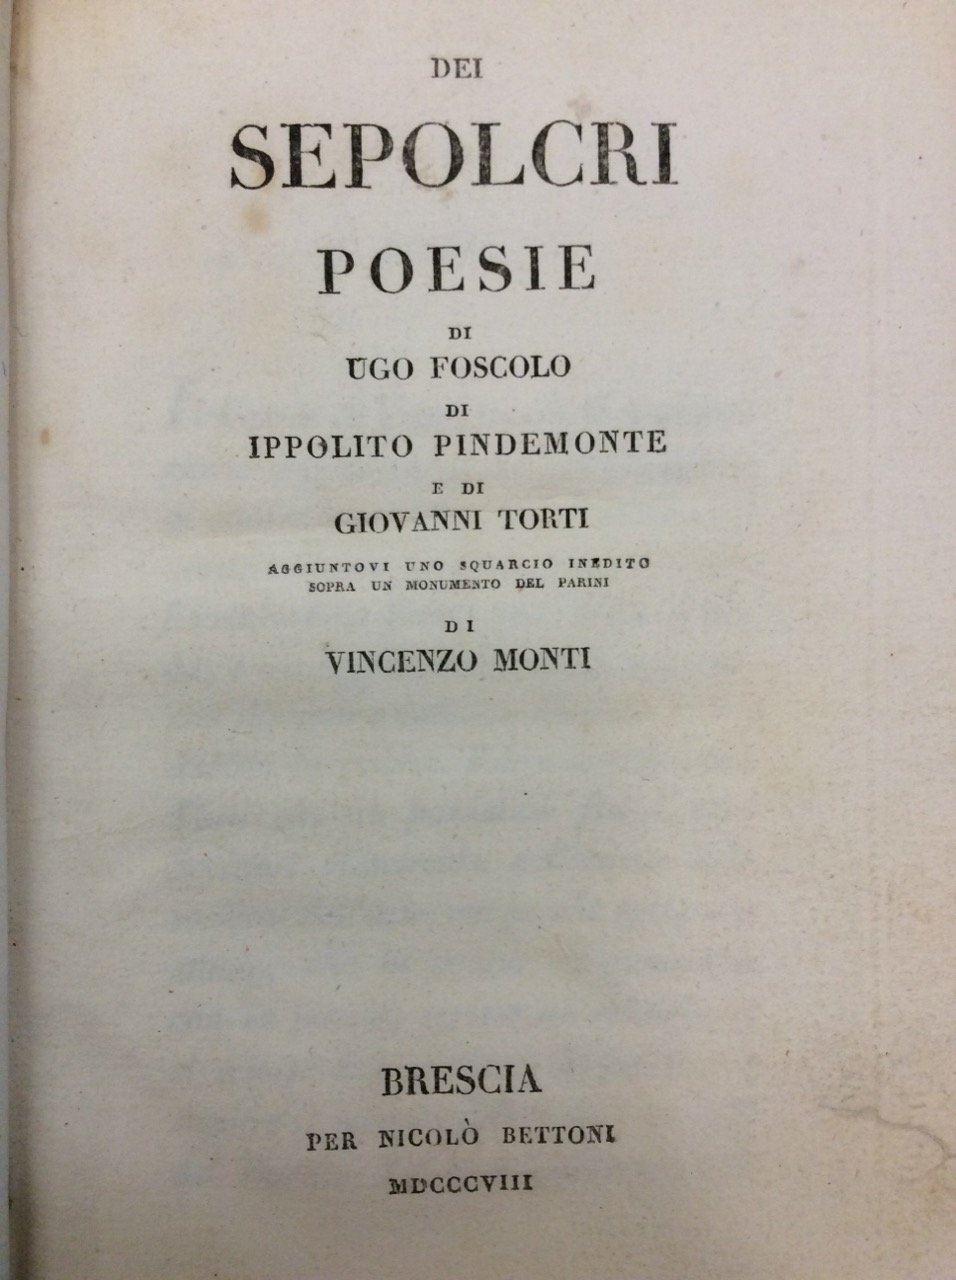 DEI SEPOLCRI. - Poesie di Ugo Foscolo, di Ippolito Pindemonte …